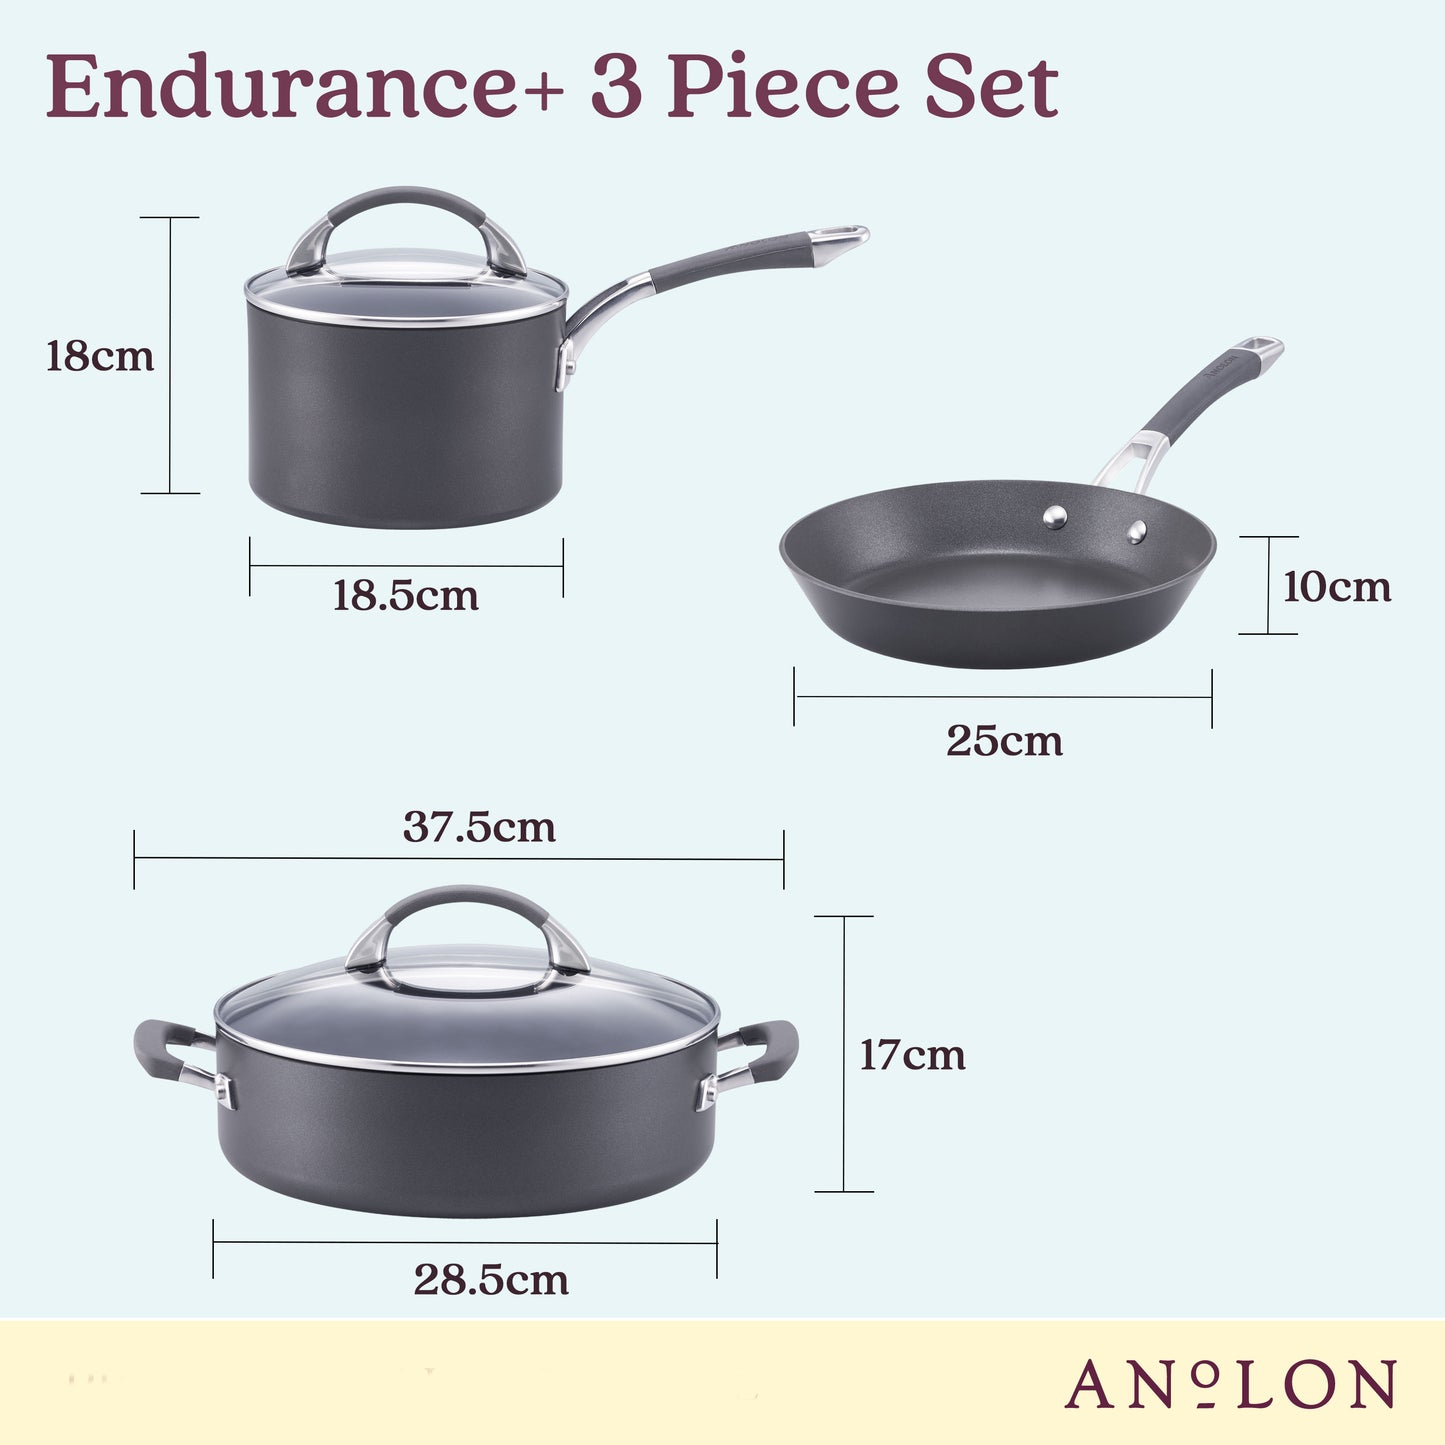 Anolon Endurance+ Nonstick 3 Piece Set